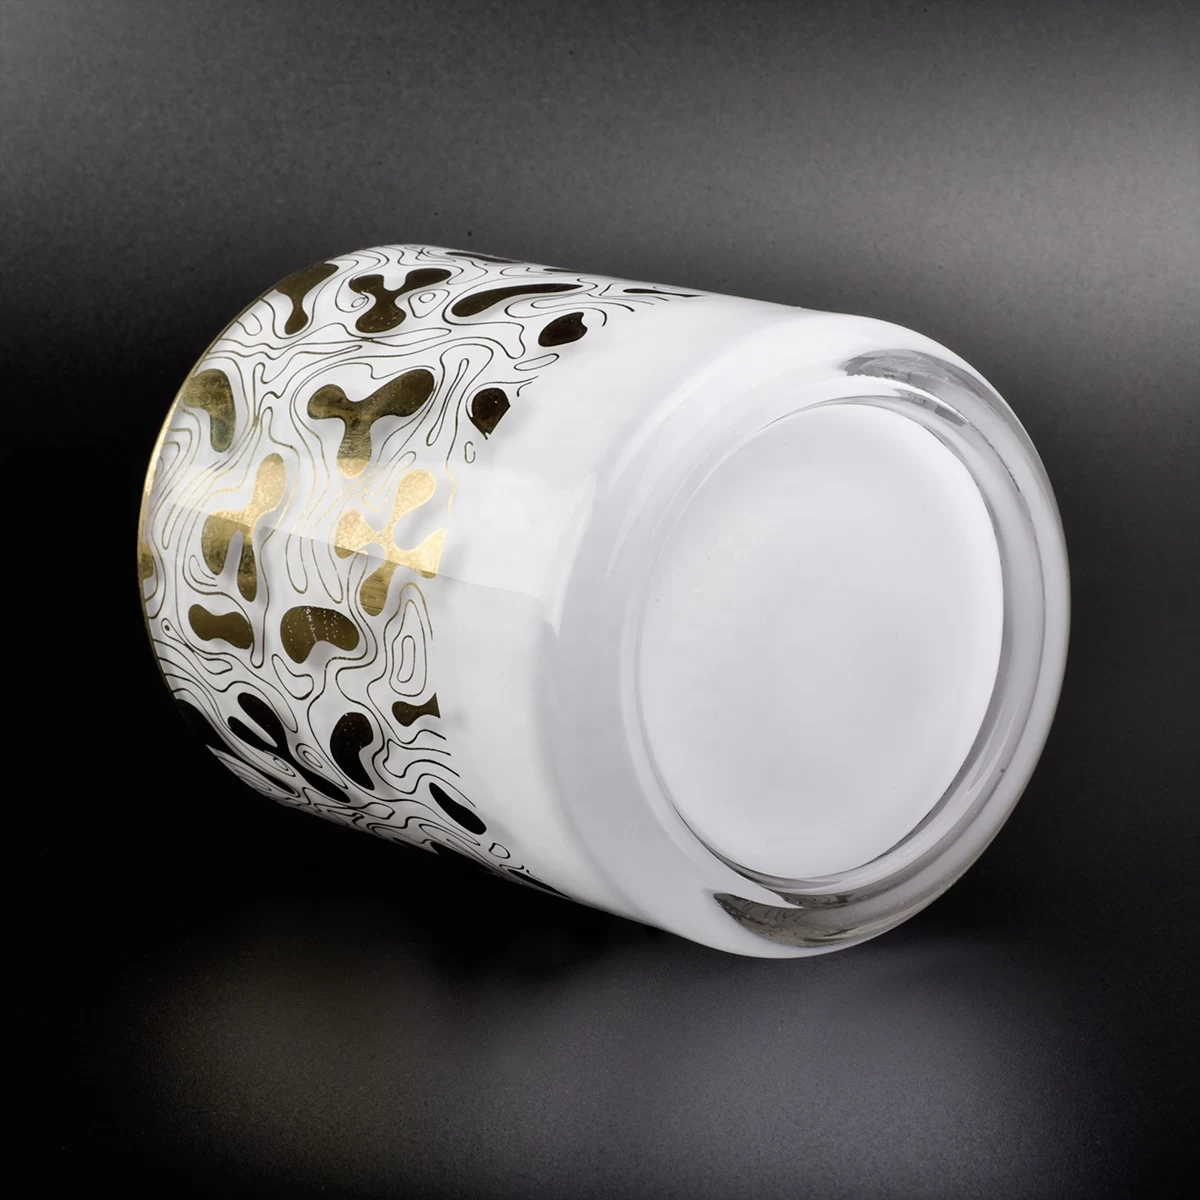 6 oz 10 oz 12 oz Supplier cylinder gold printing glass holder vessel for candle making